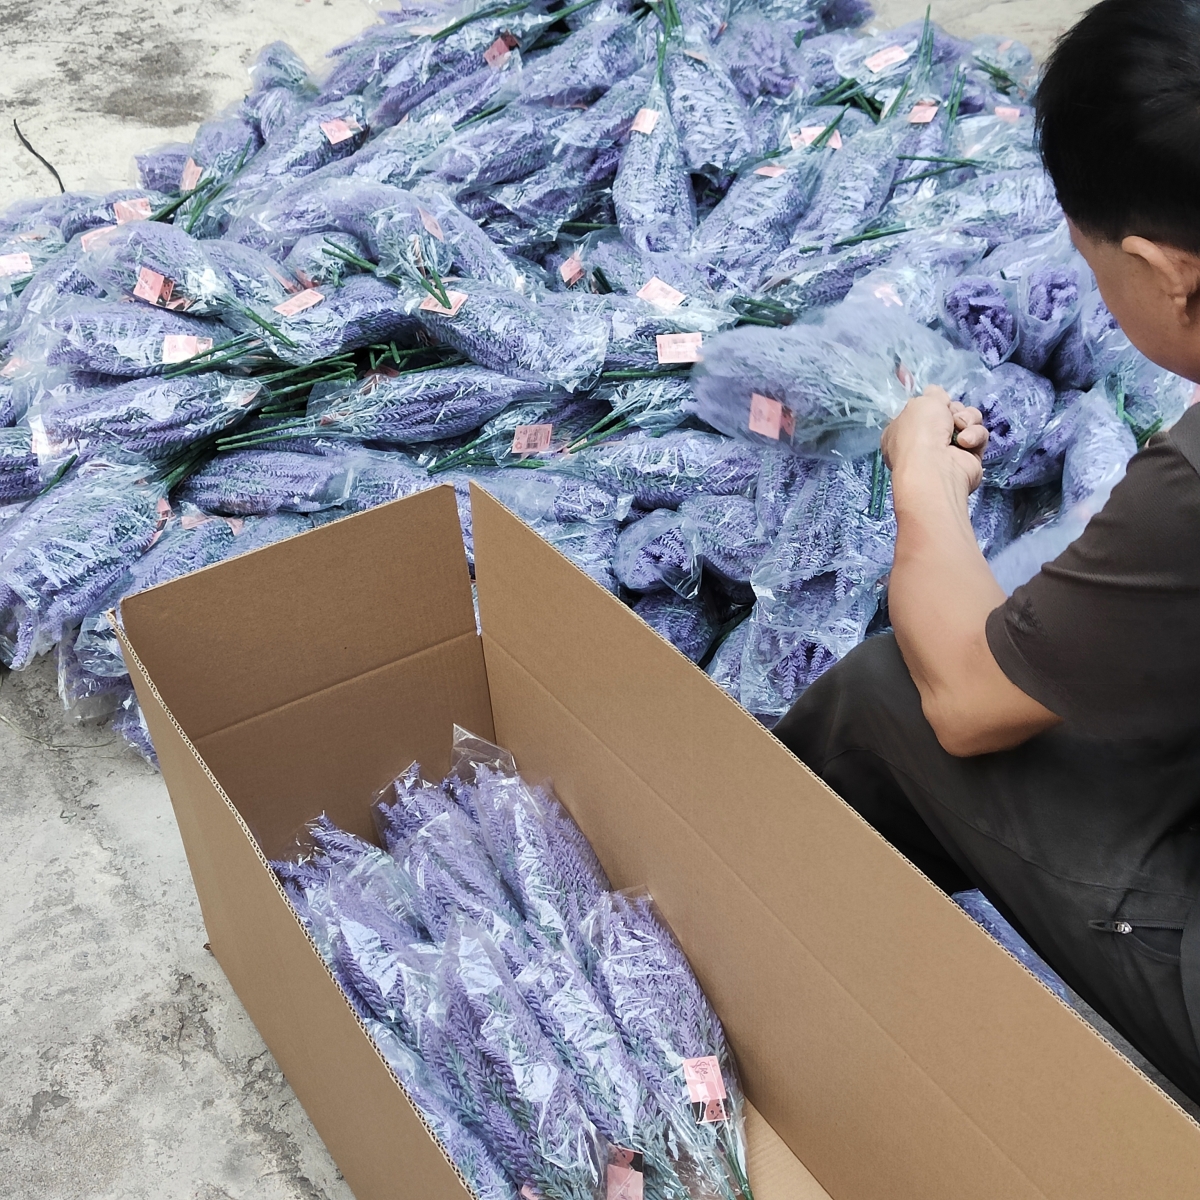 Kina konstgjorda lavendel blomma fabrik, plast lavendel stjälk, grossist falska blommor leverantör-Sunyfar konstgjorda blommor, Kina fabrik, leverantör, tillverkare, grossist